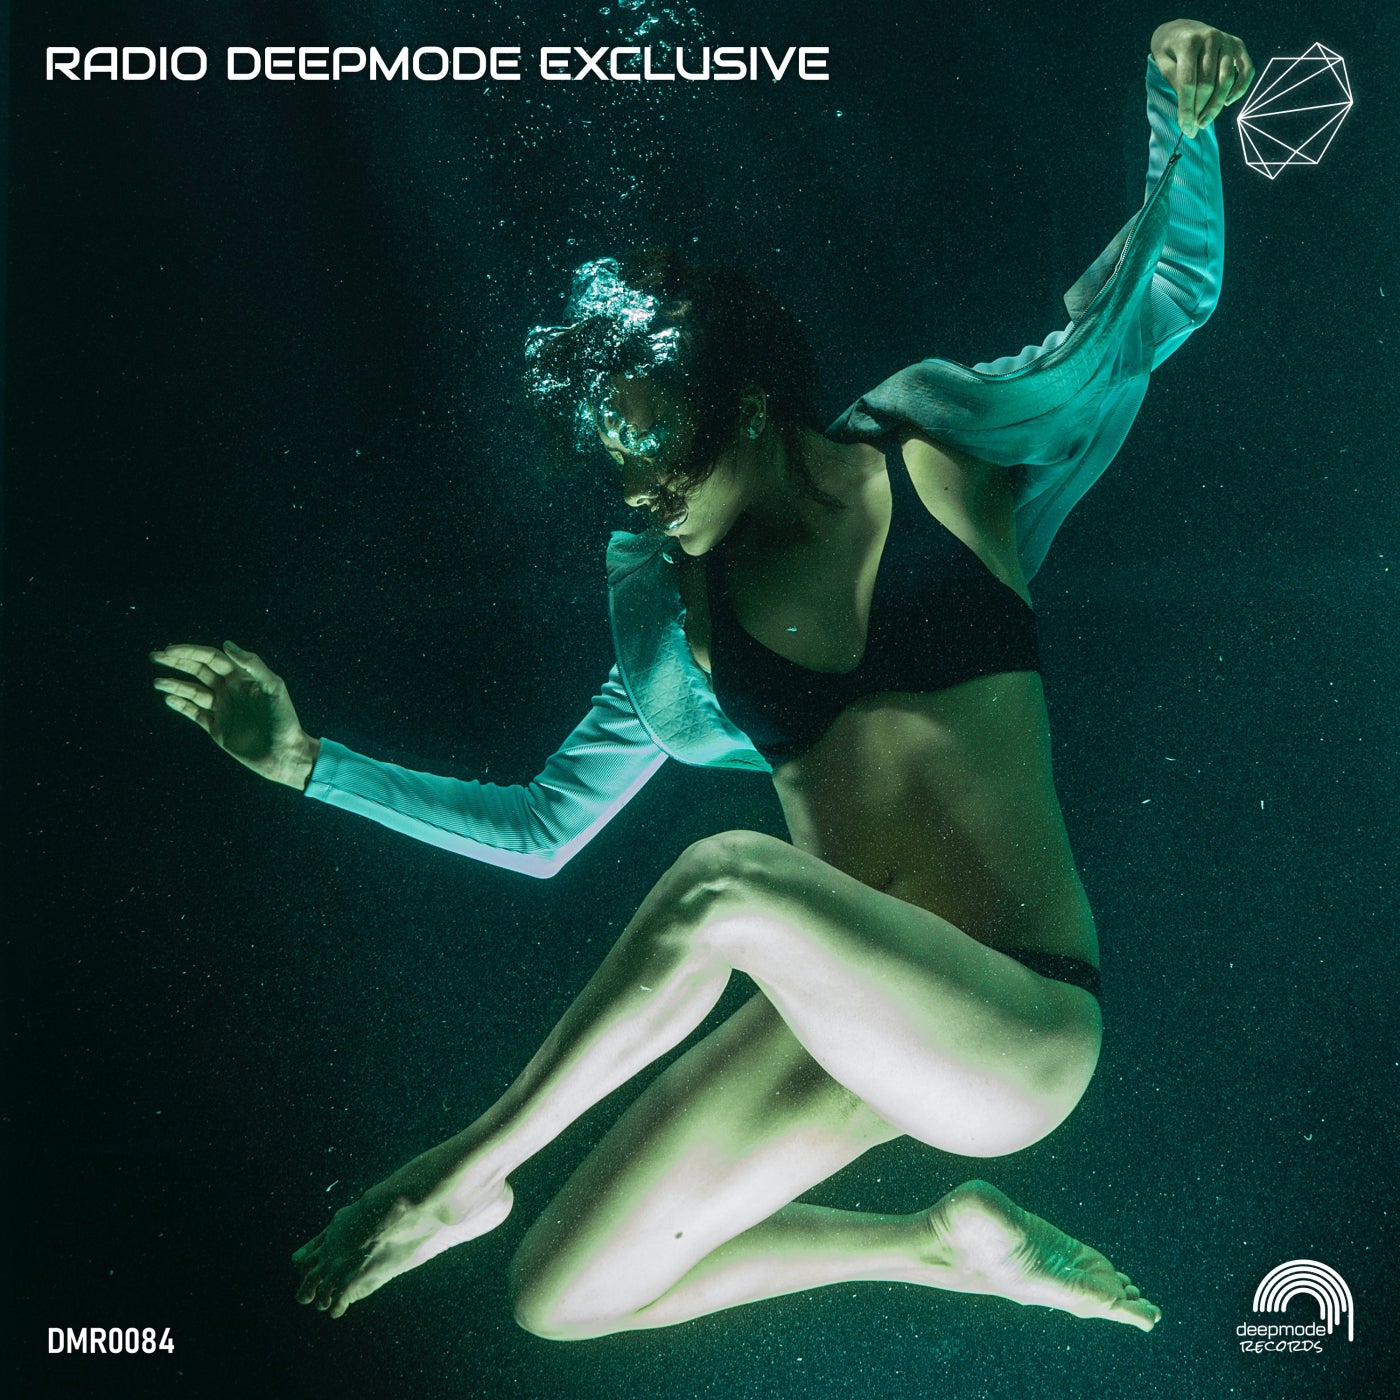 VA – Radio Deepmode Exclusive [DMR0084]